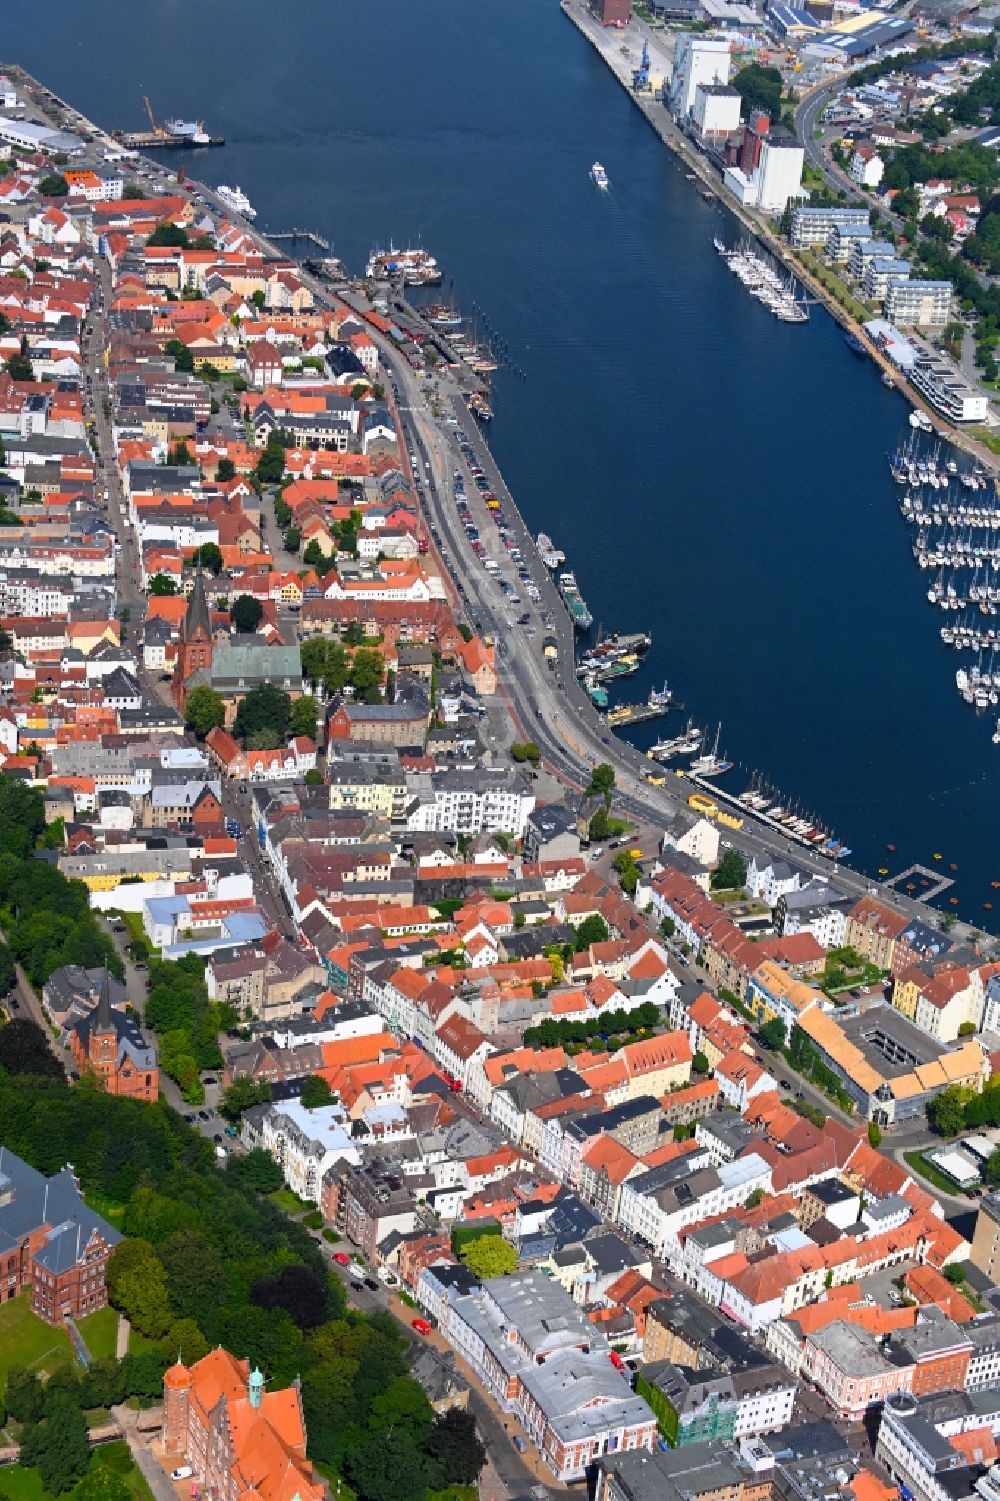 Luftbild Flensburg - Altstadtbereich und Innenstadtzentrum in Flensburg im Bundesland Schleswig-Holstein, Deutschland